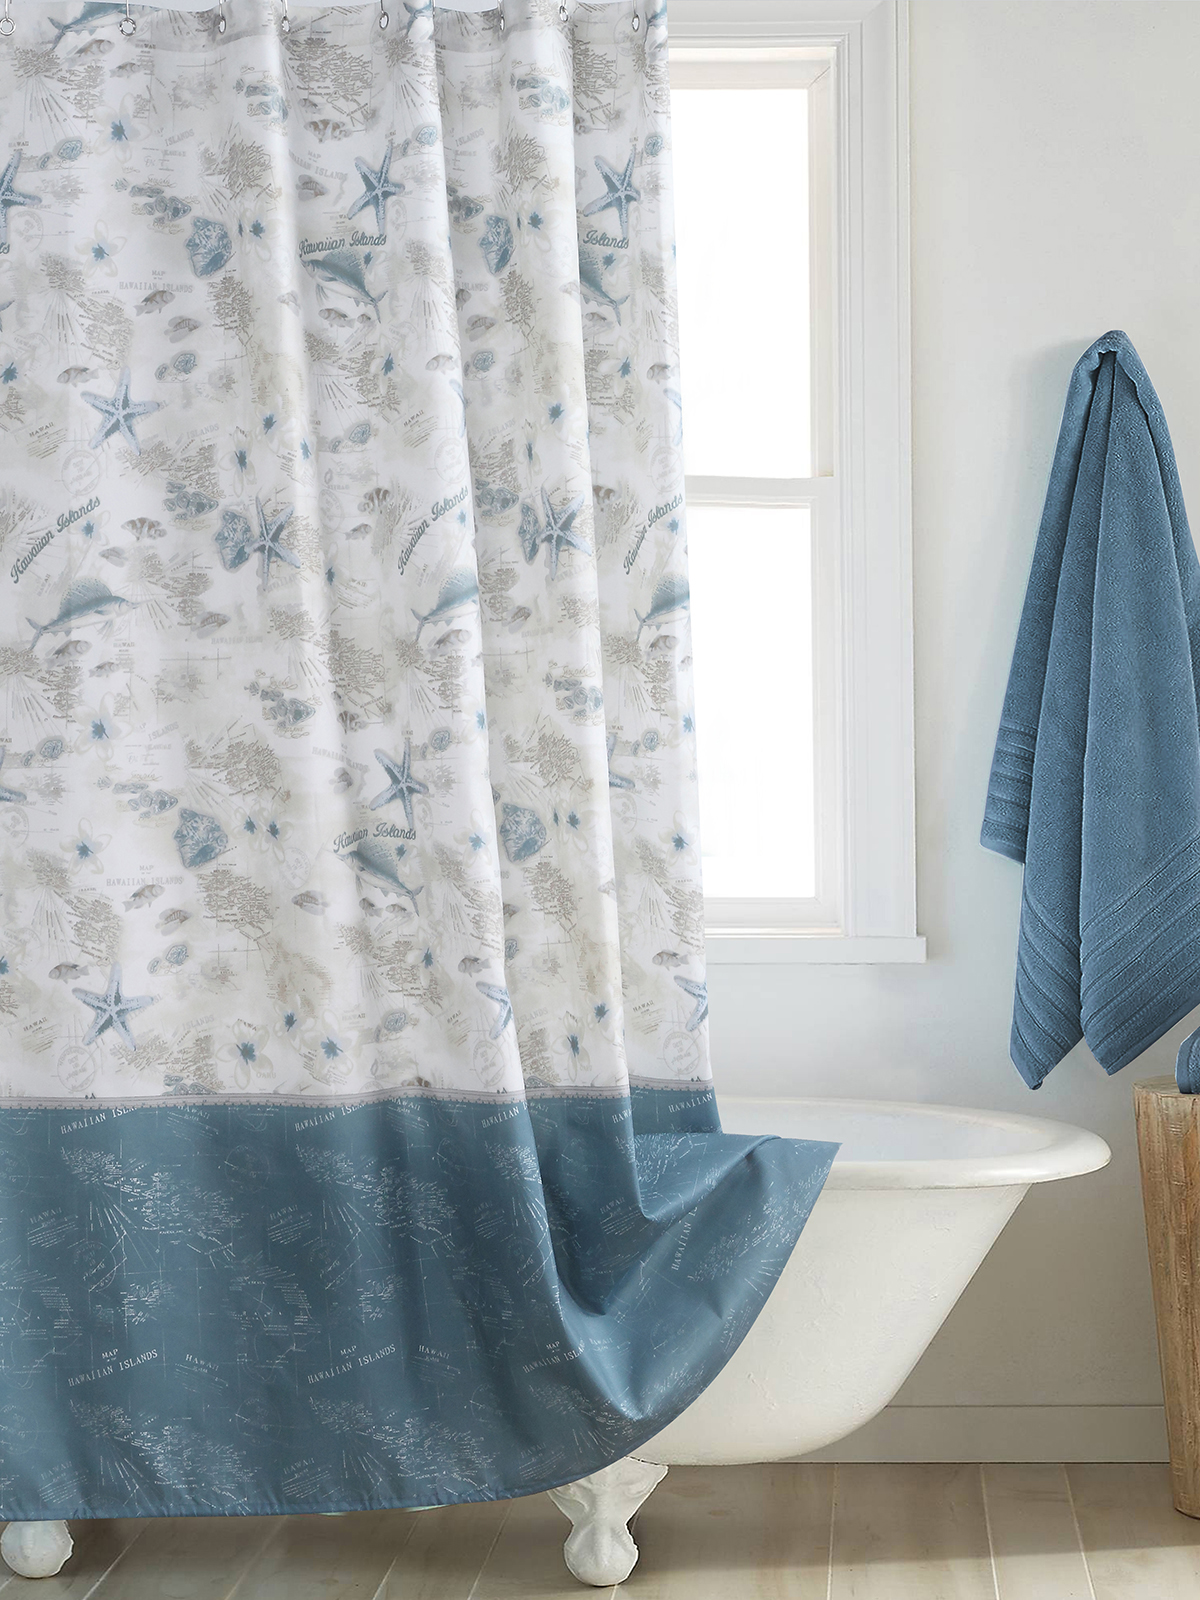 歐式海洋風防水防黴滌綸布料浴簾讓浴室煥然一新